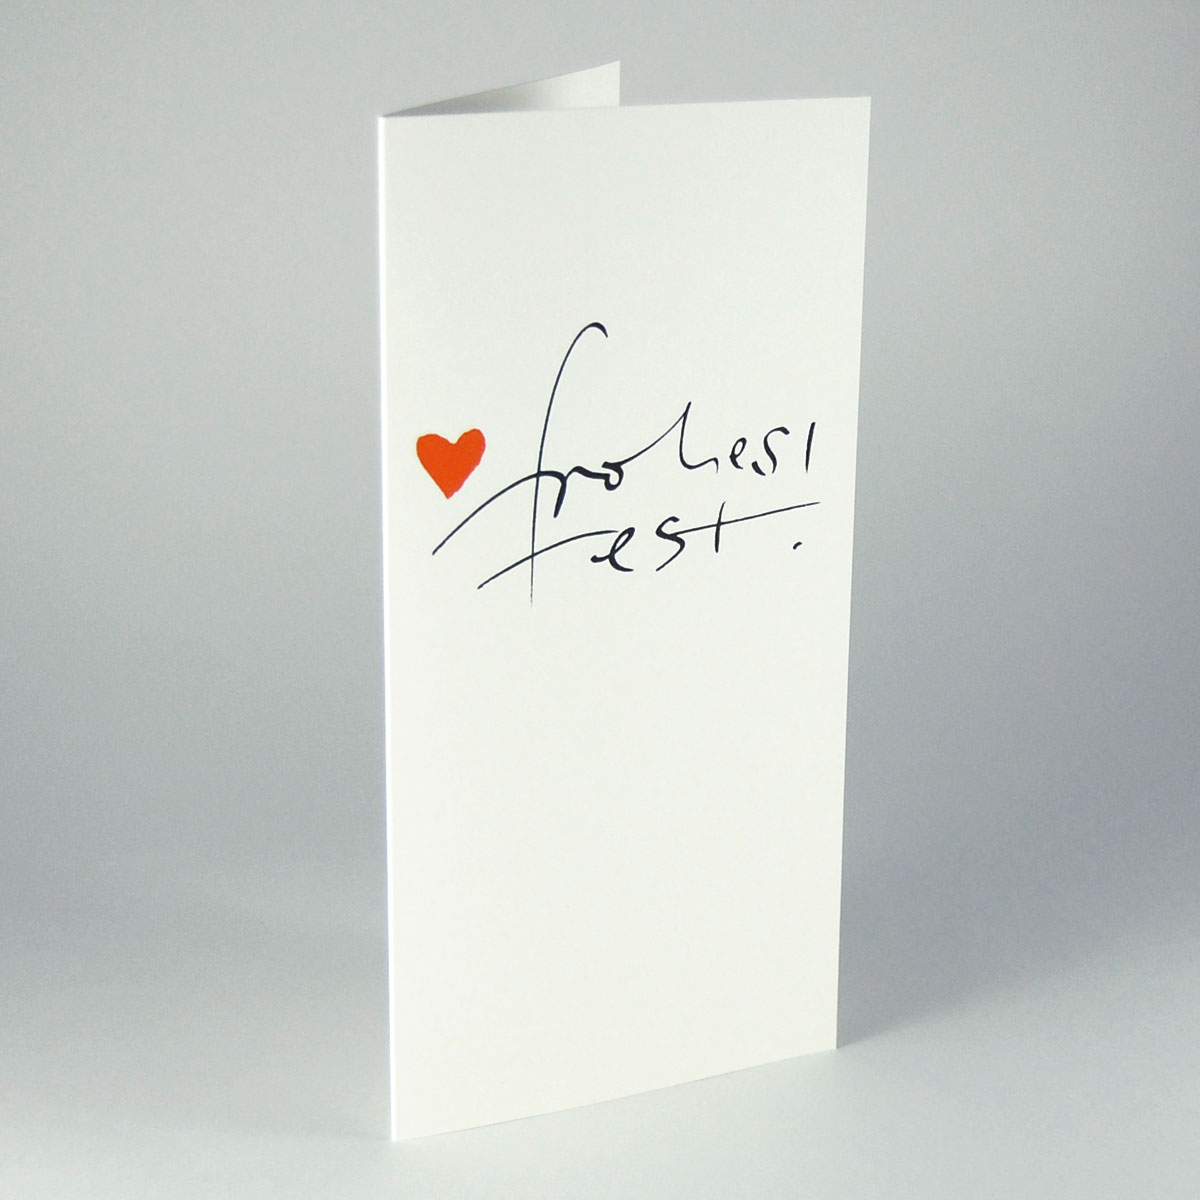 frohes fest! Kalligrafie-Weihnachtskarten mit orangenem Herz